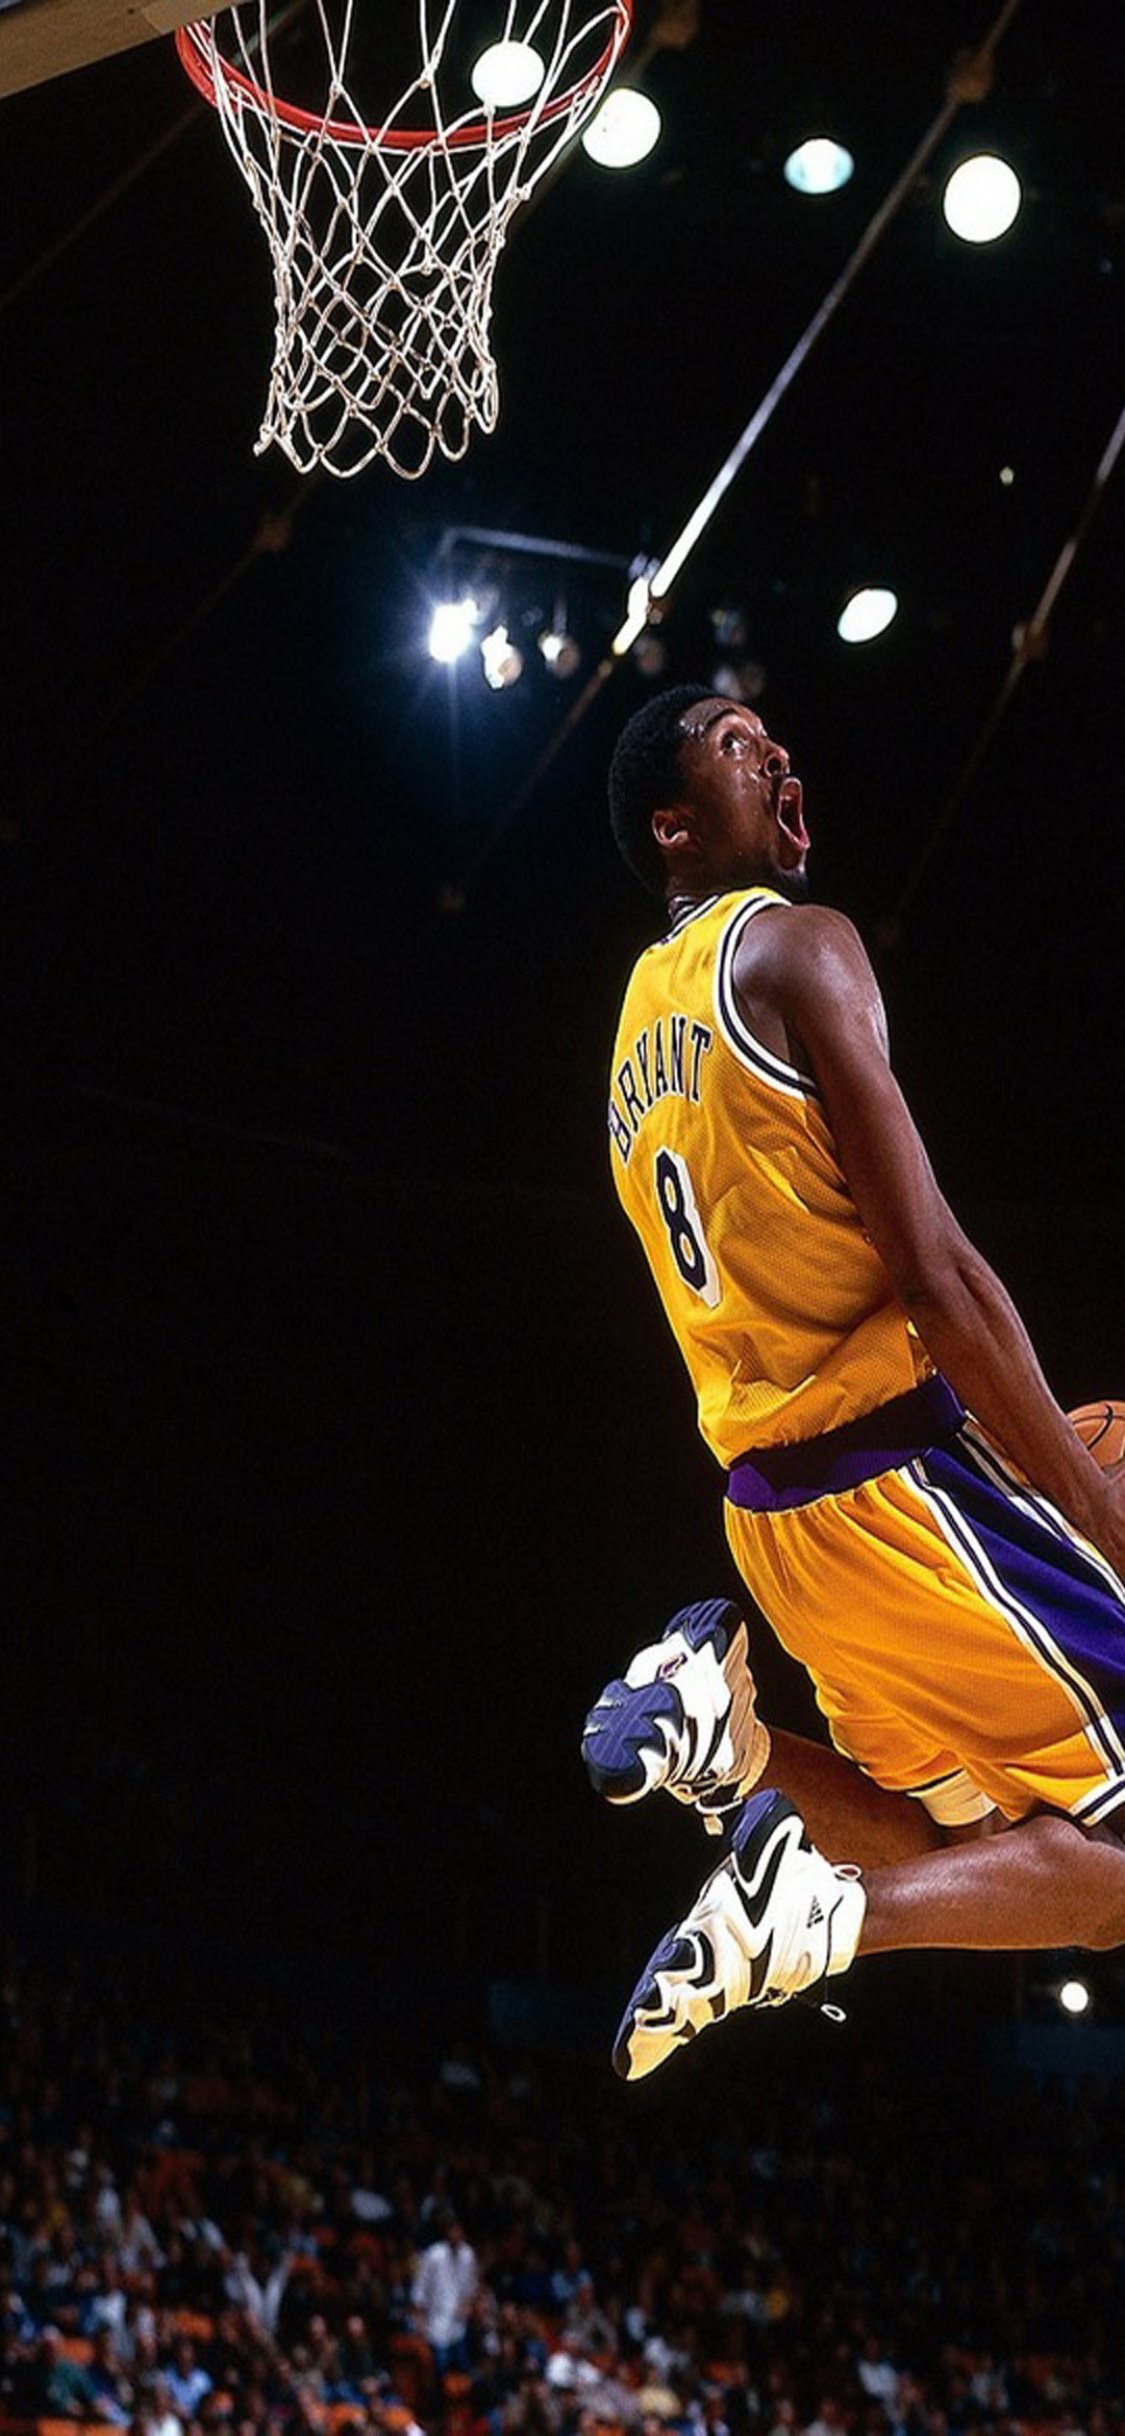 Tải ngay hình nền Kobe Bryant, đầy sức sống và khoẻ khoắn cho điện thoại iPhone 